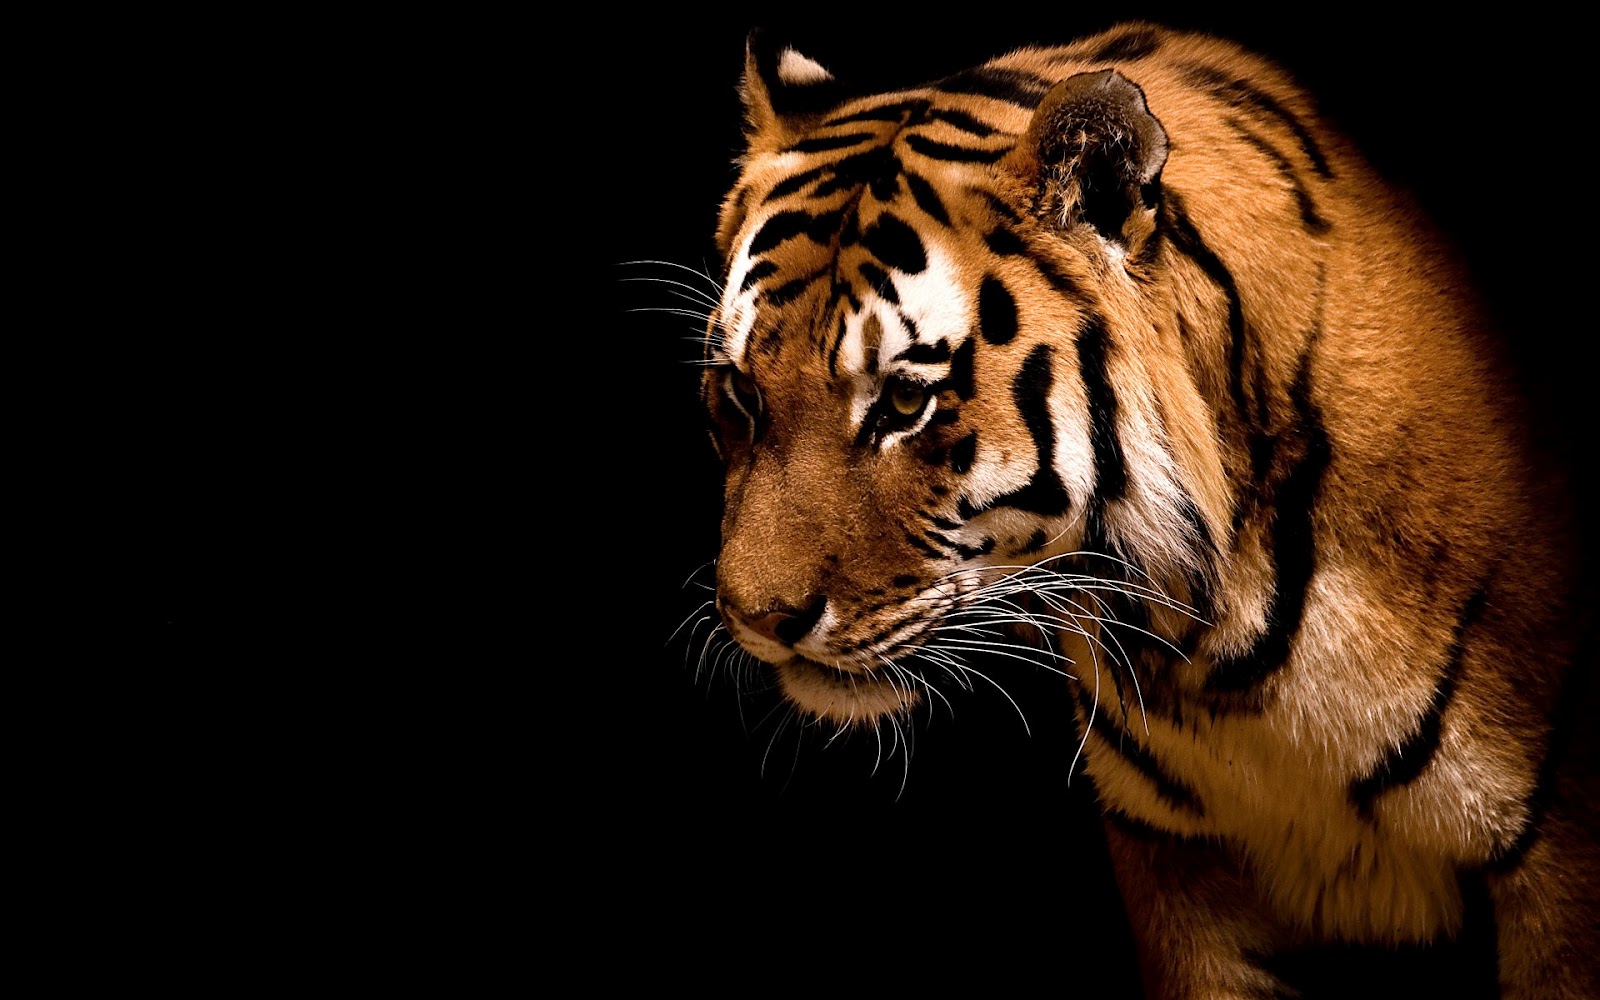    HD Desktop Wallpapers Online Amazing Wallpapers Of Tigers 1600x1000